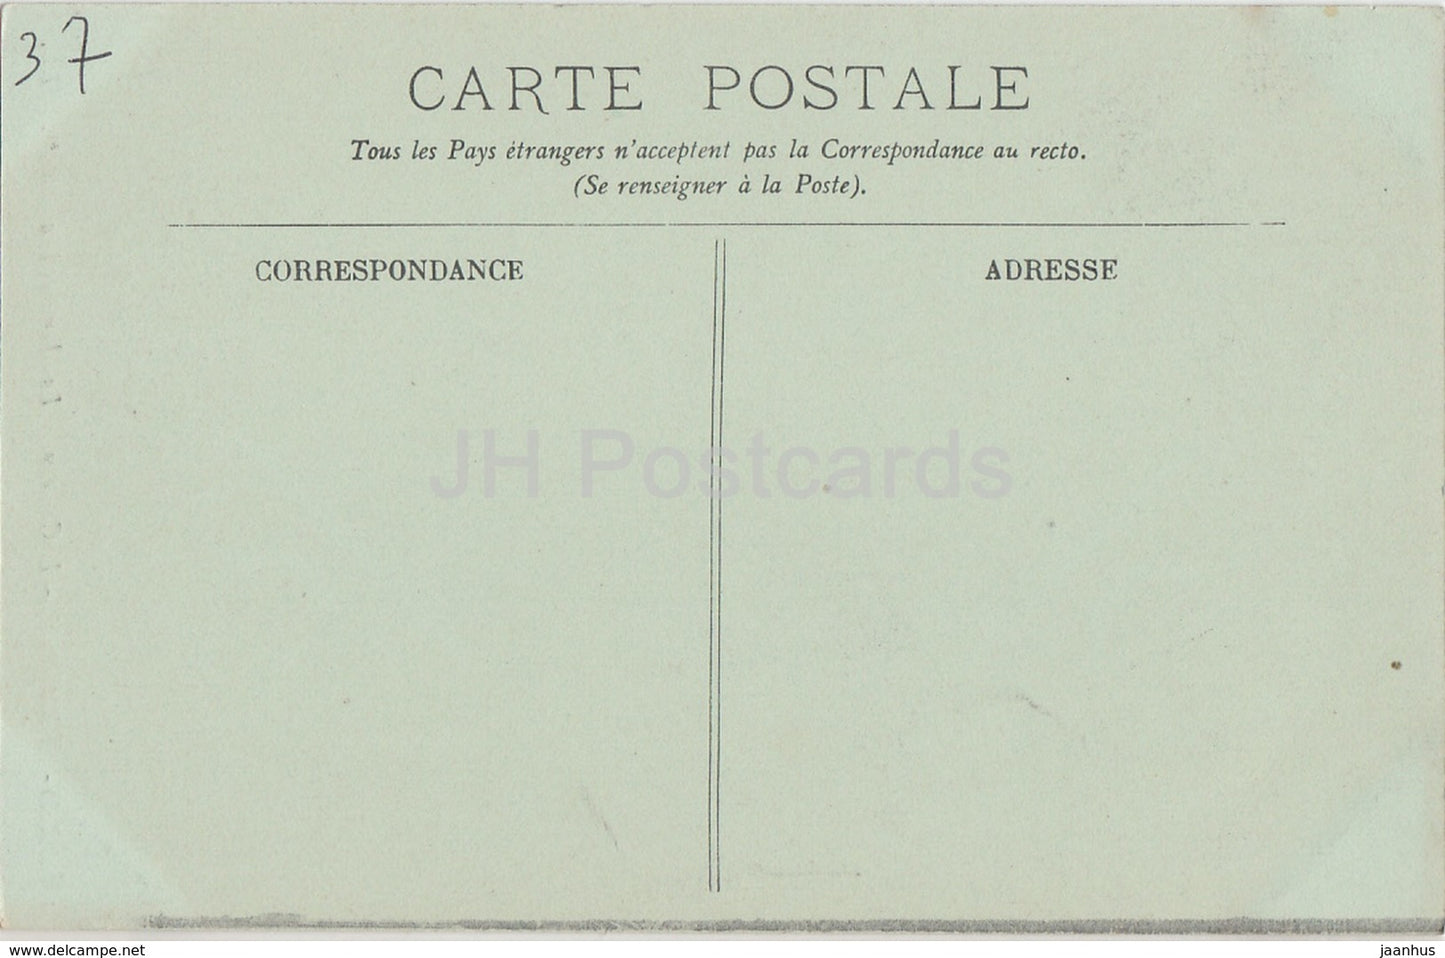 Azay Le Rideau - Le Château - La Cheminée François Ier - château - 18 - carte postale ancienne - France - inutilisé